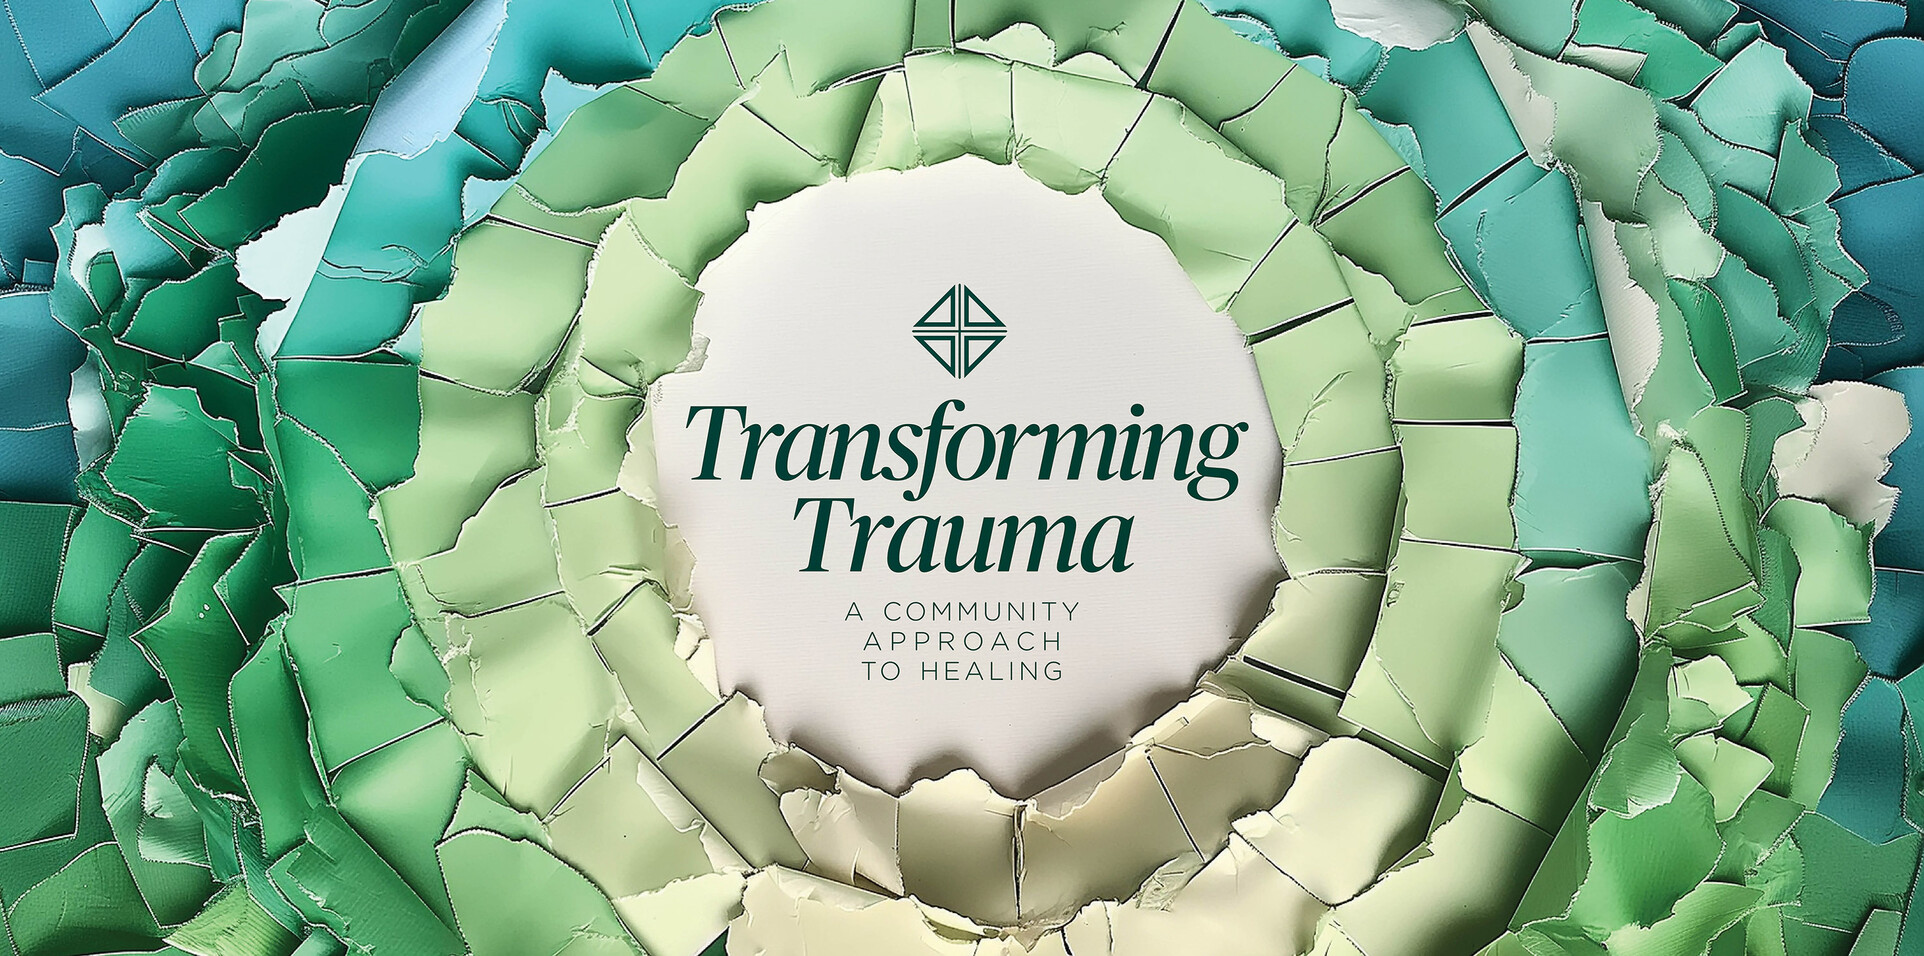  Transforming Trauma